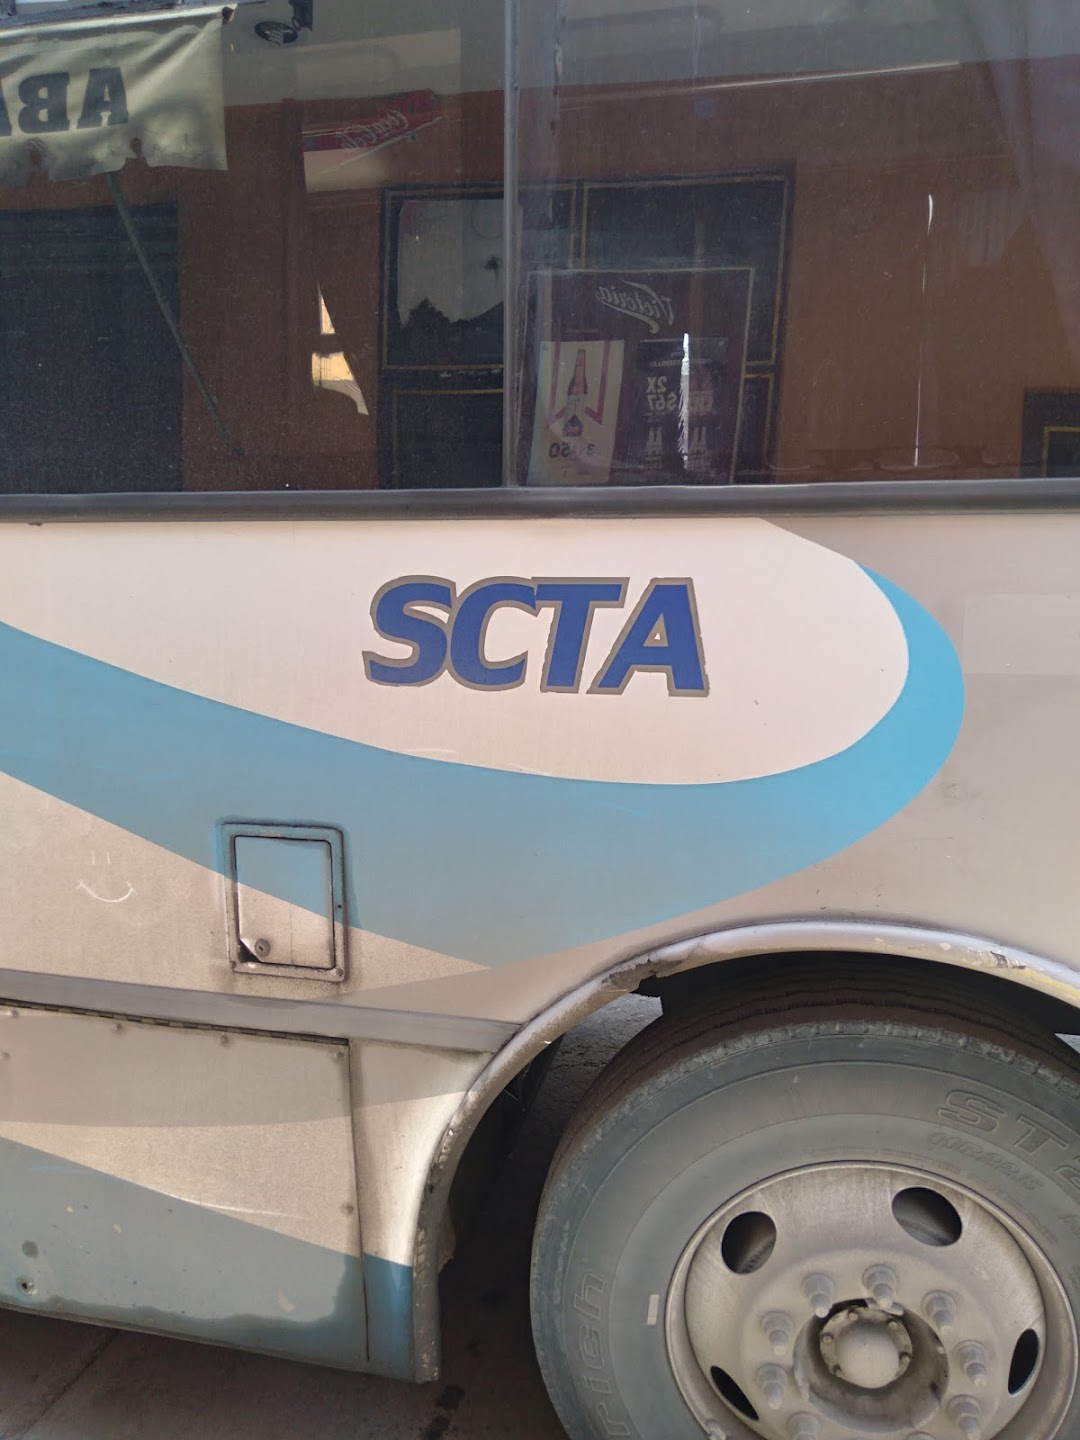 Parada de autobuses SCTA